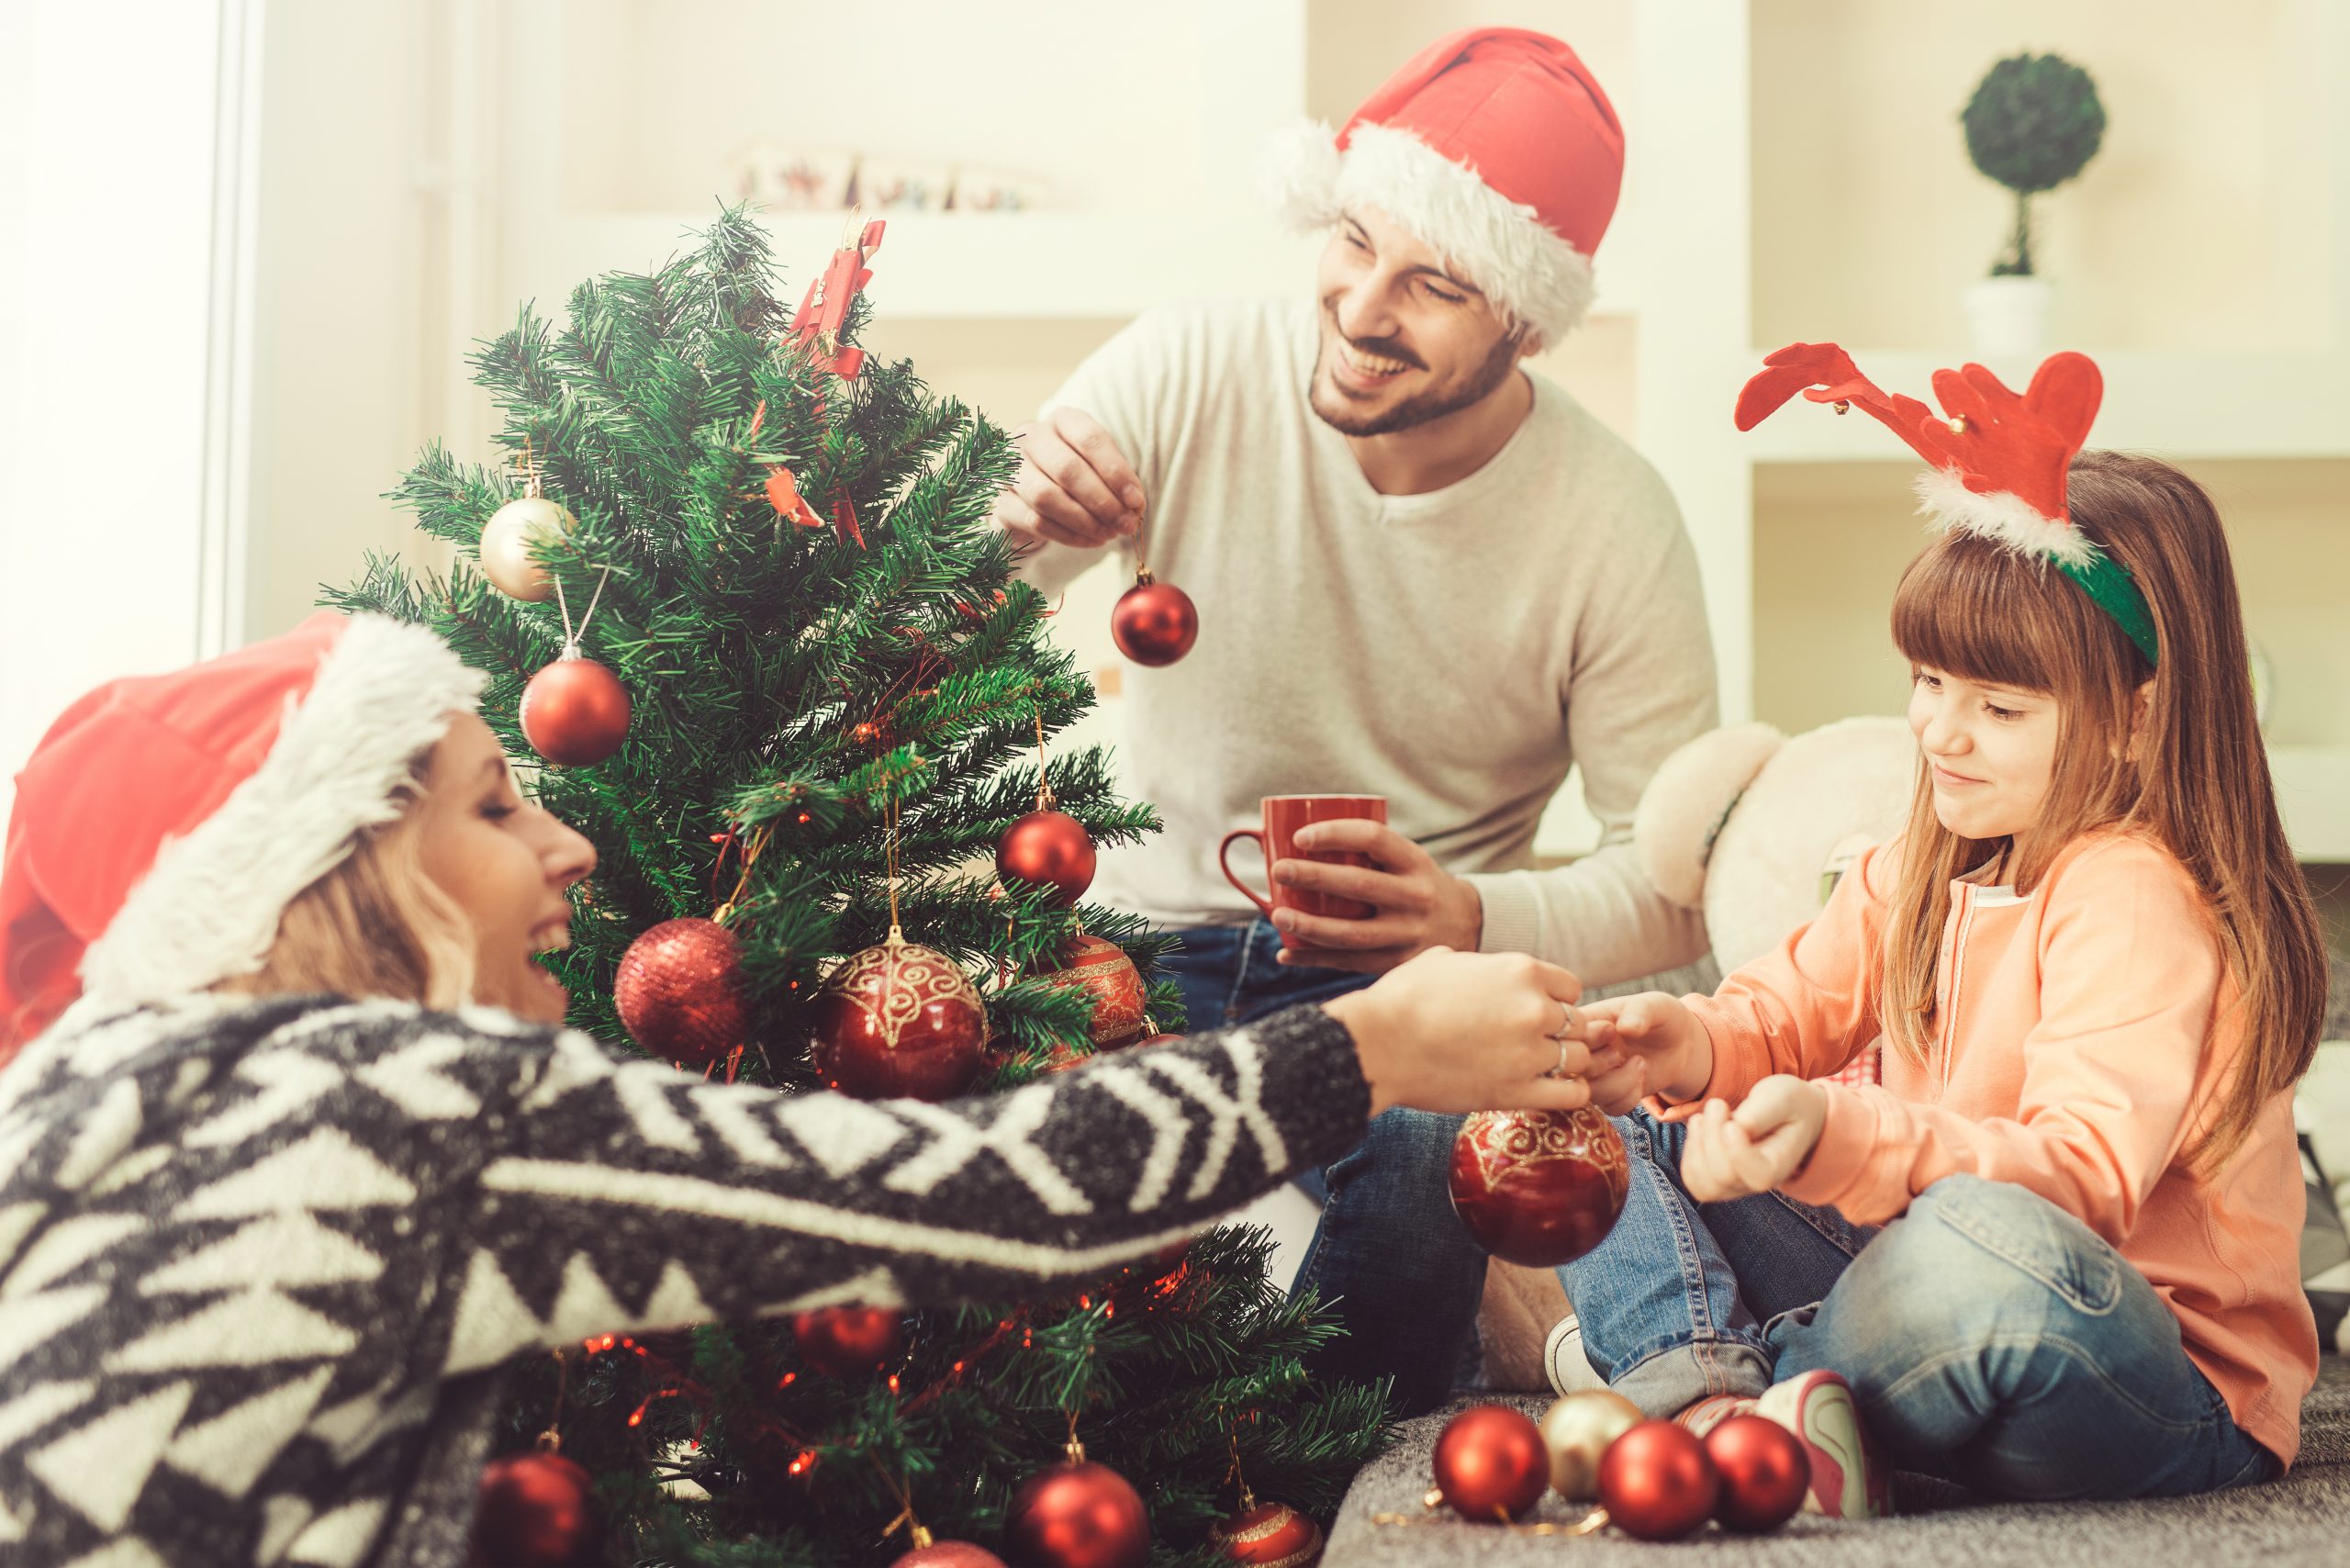 E’ arrivato il Natale: ecco alcuni pratici consigli per viverlo al meglio!